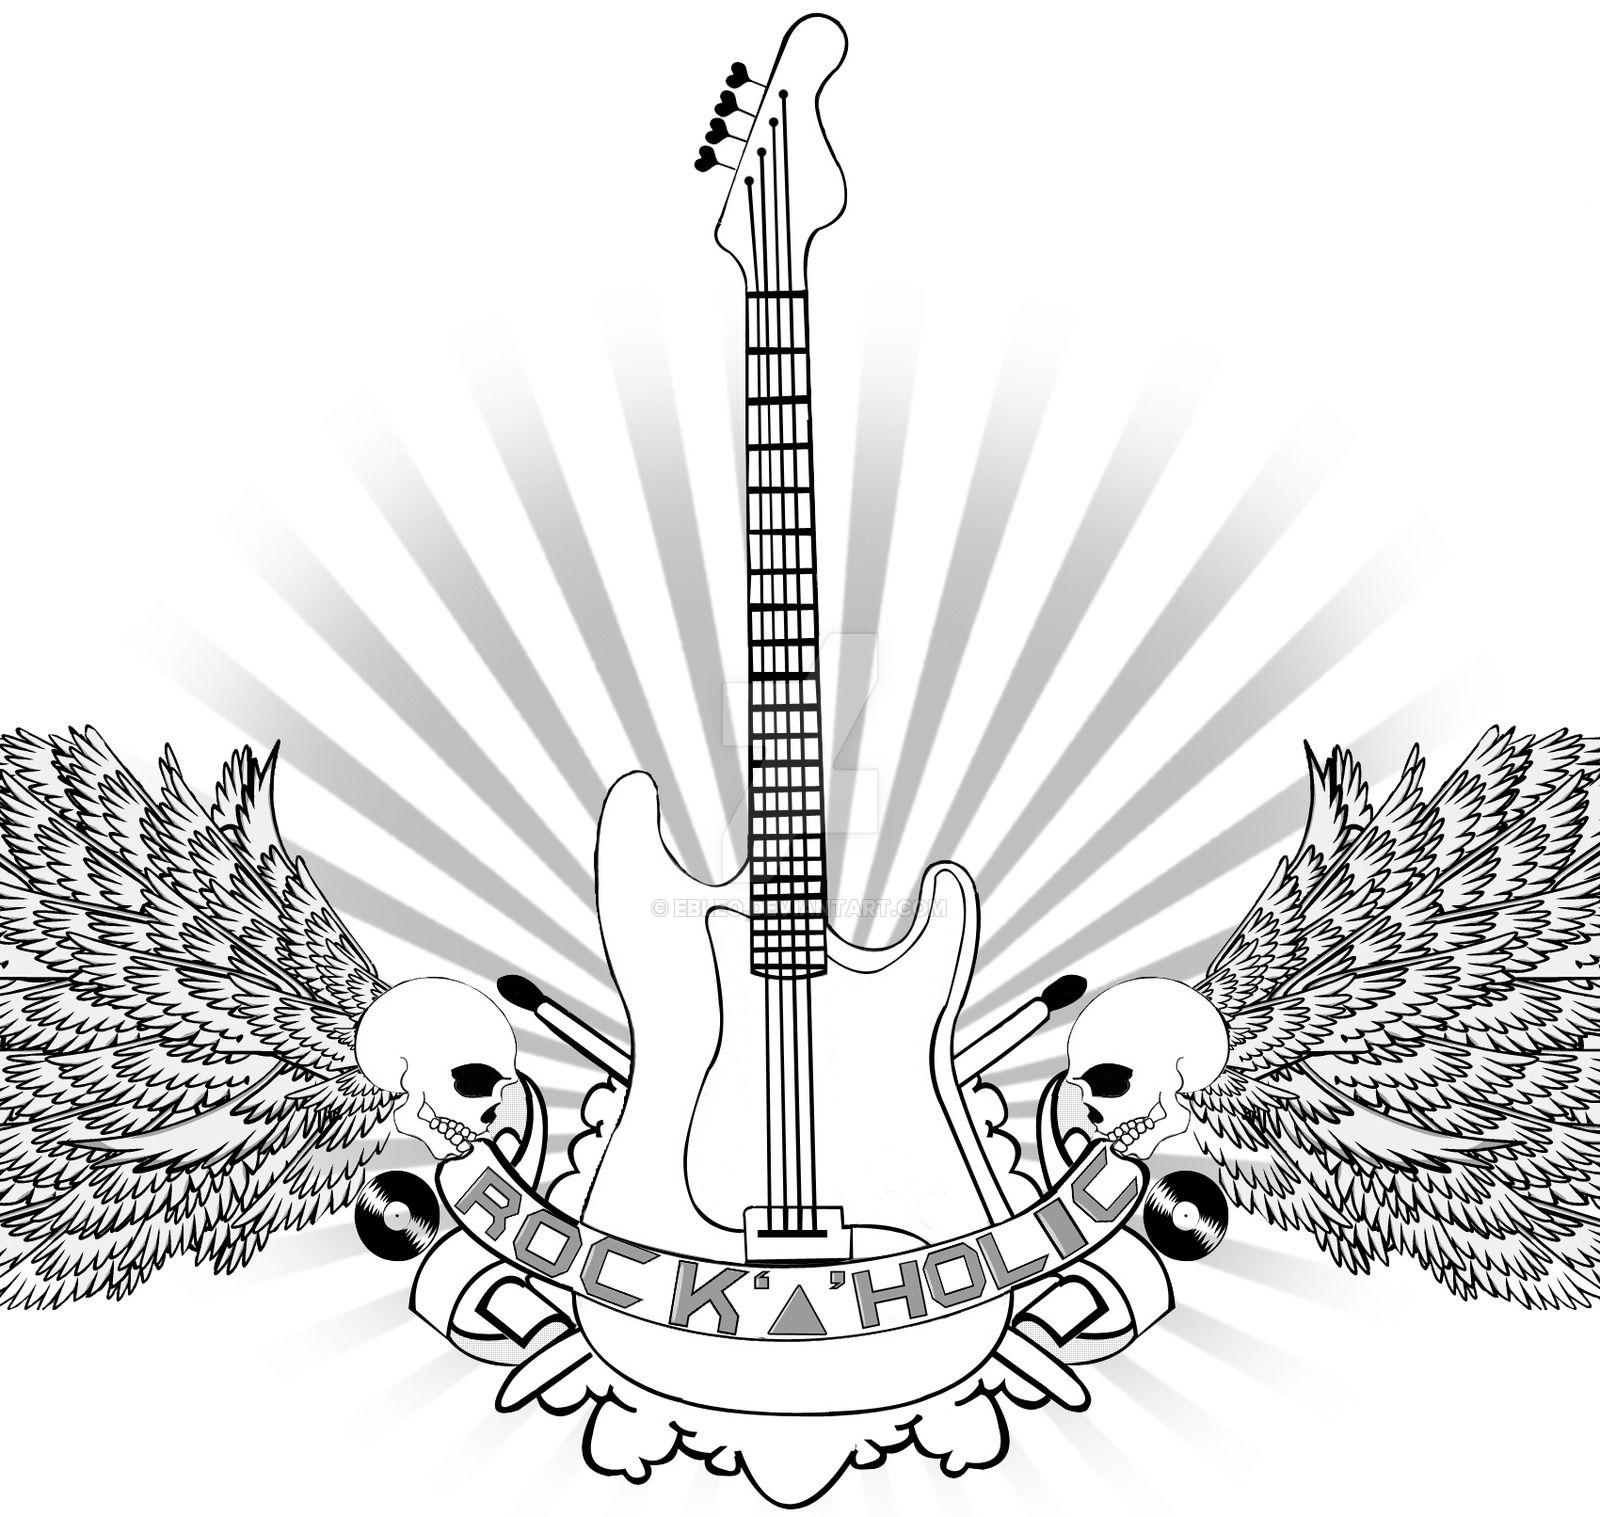 Rockaholic Logo - Rockaholic